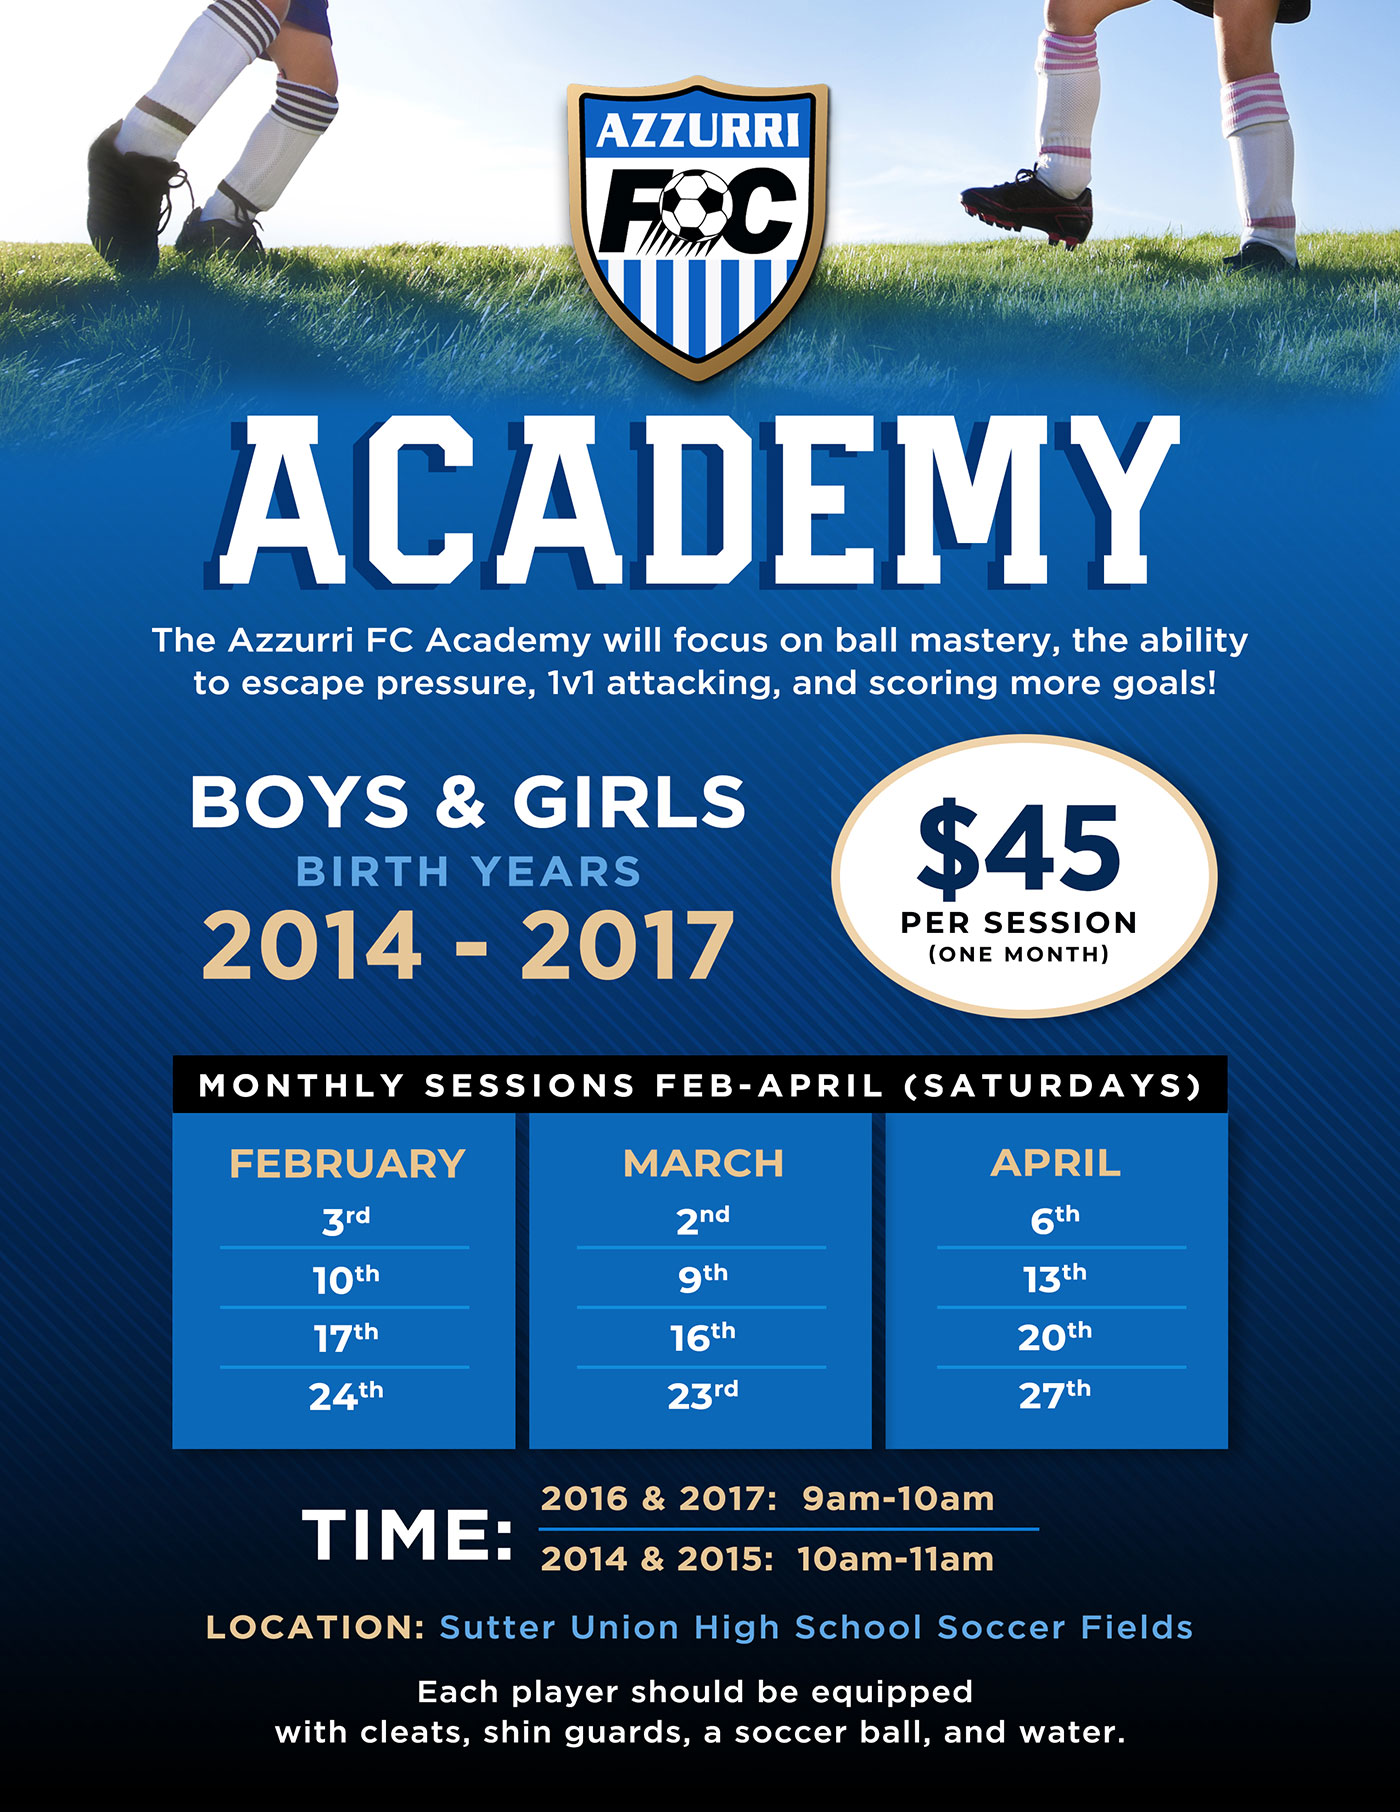 azzurri fc academy youth soccer training